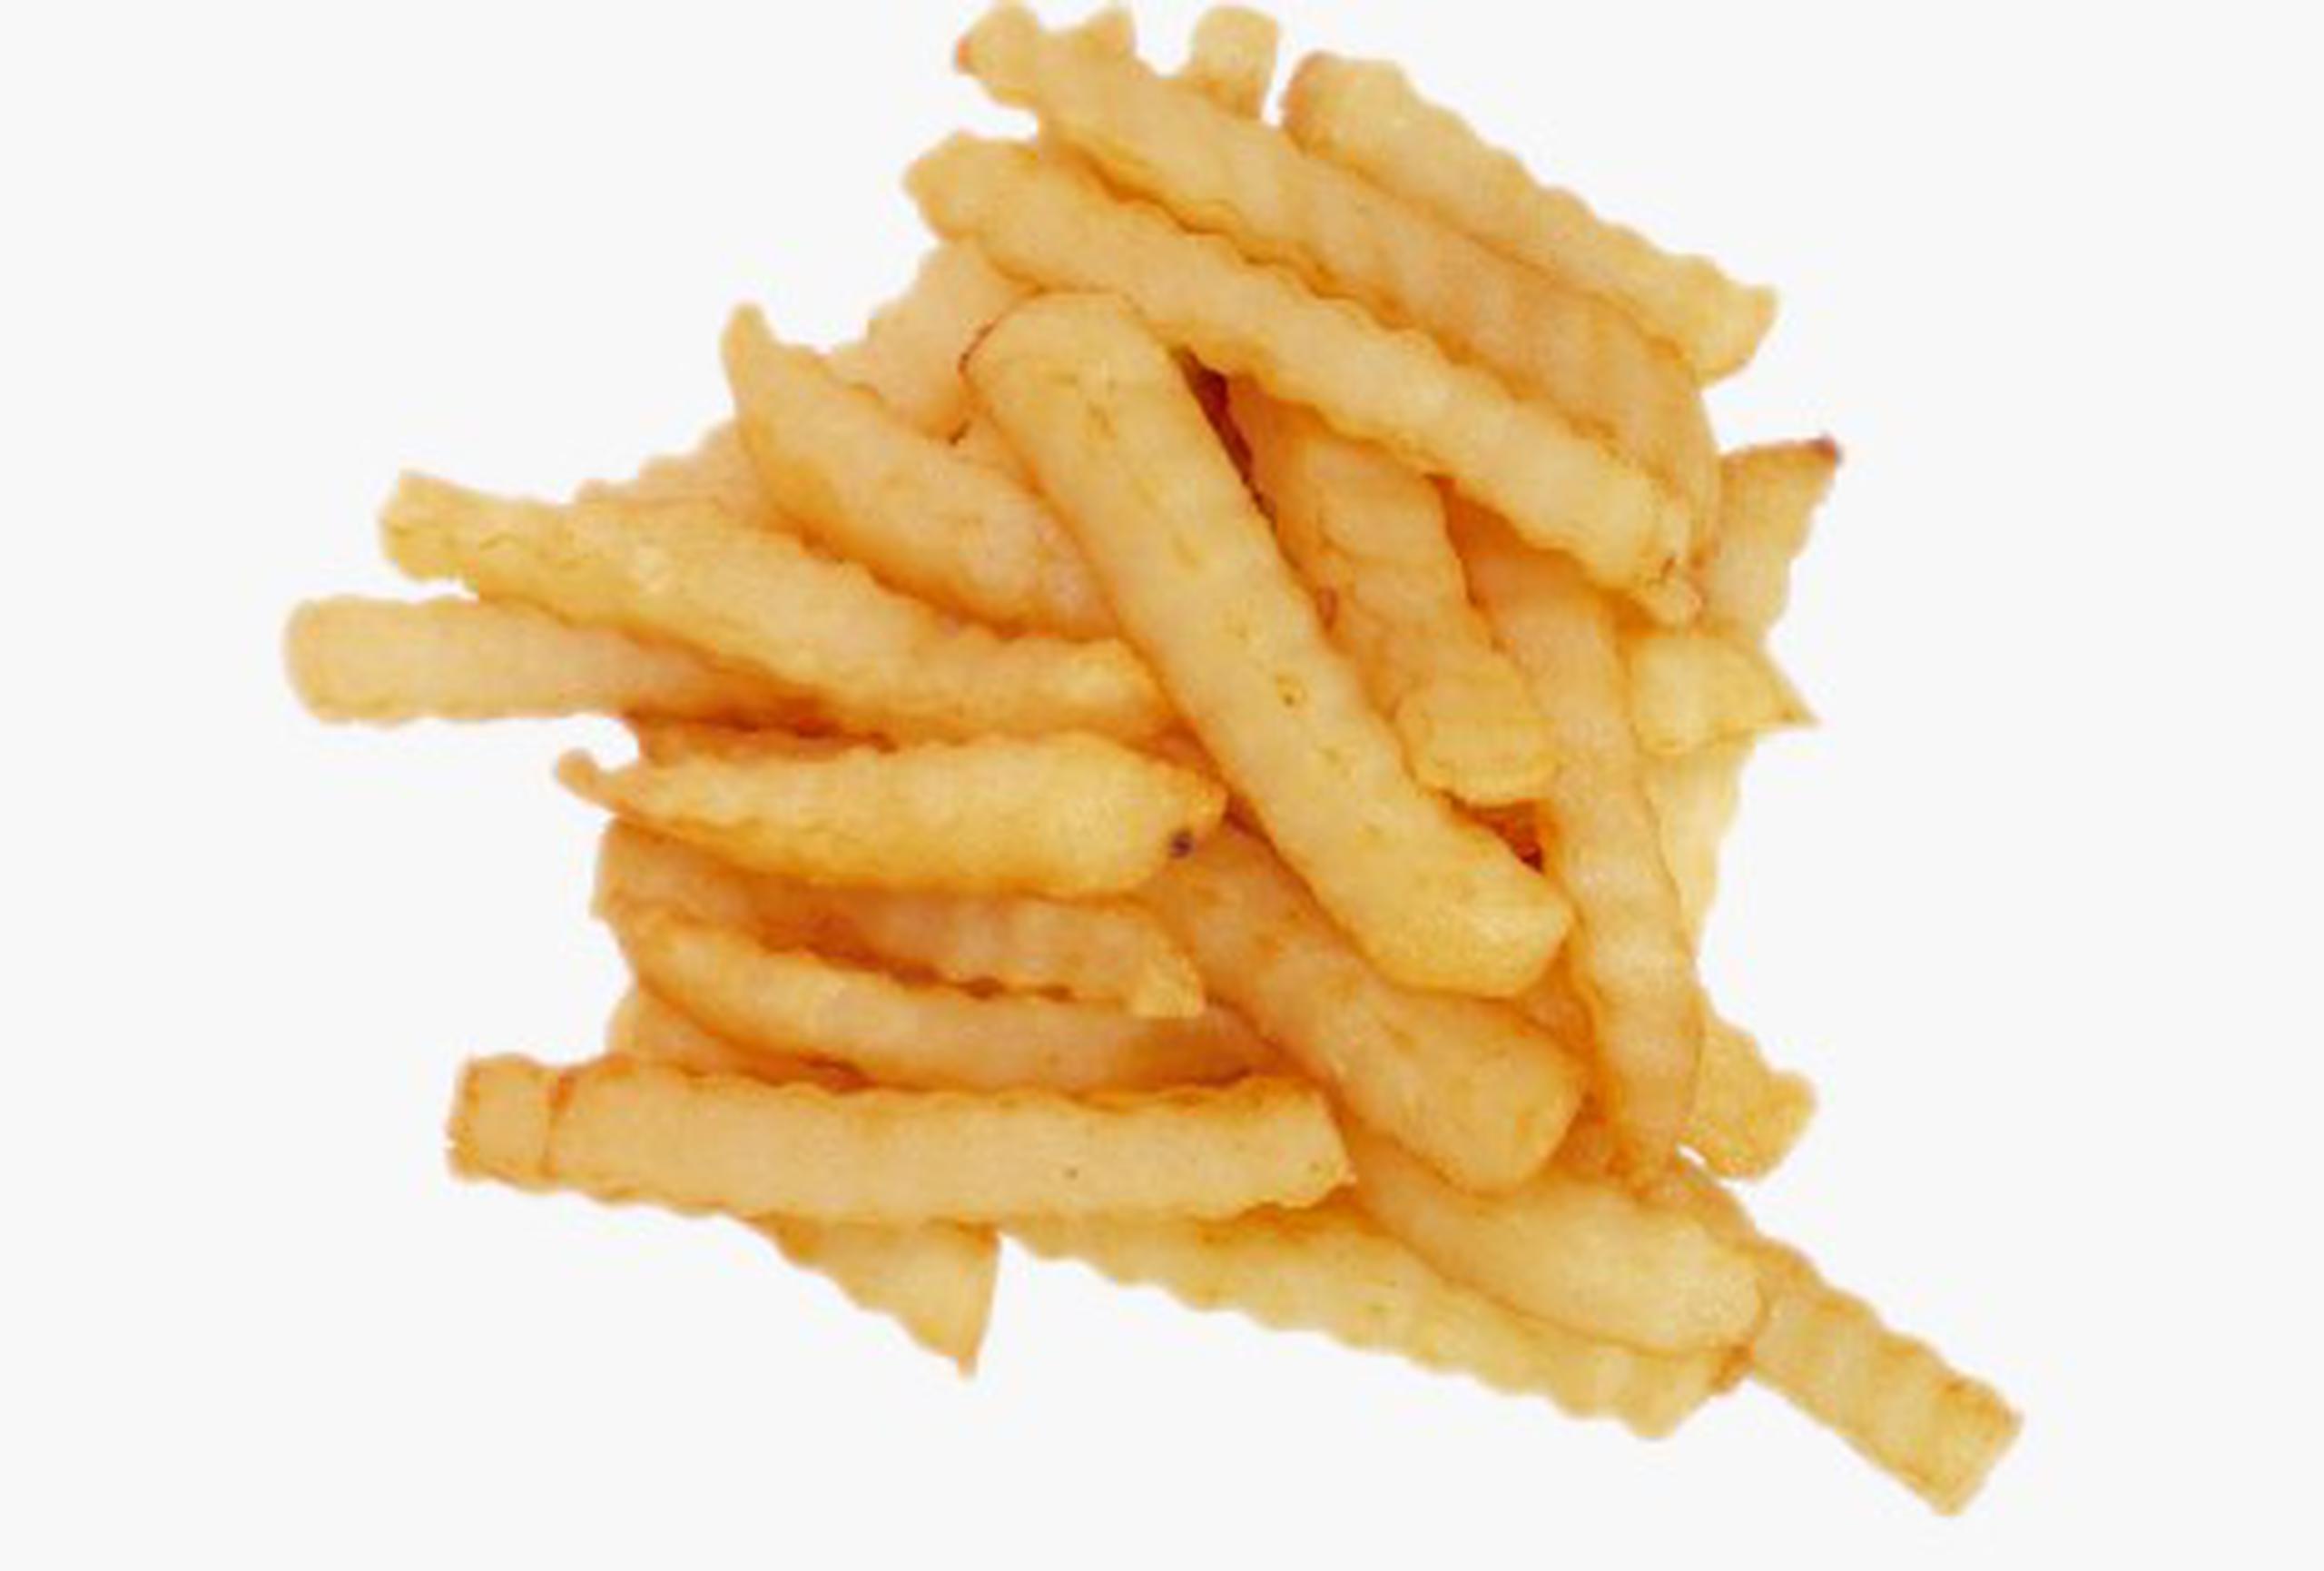 Aunque Bélgica reivindique su autoría, la patata frita seguirá siendo francesa para medio mundo, empezando por EEUU donde incluso se las llama "patatas francesas" (french fries). (Archivo)